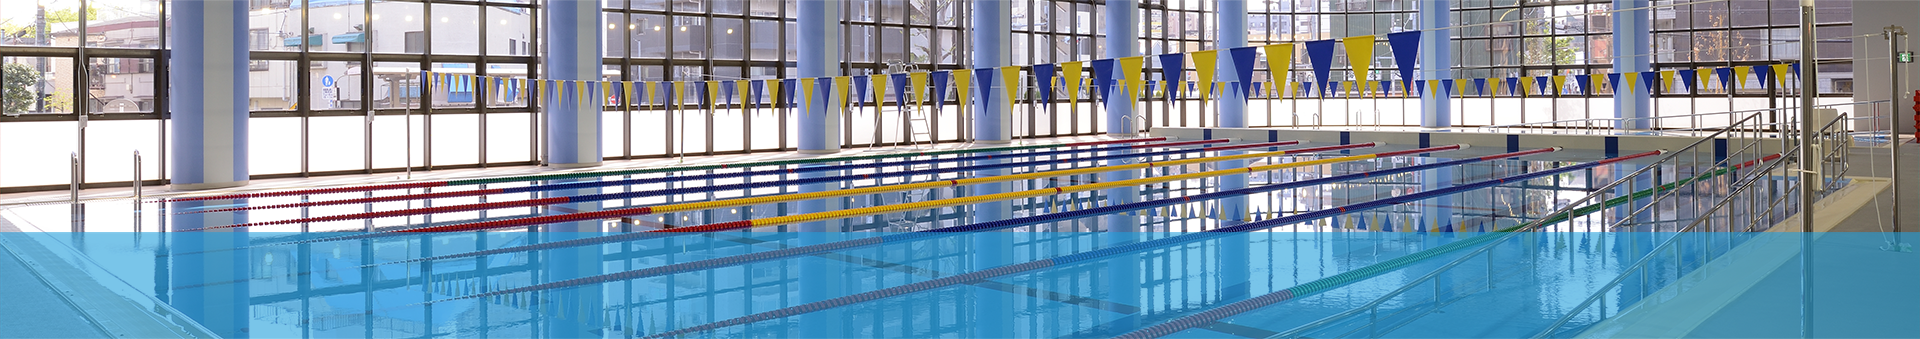 令和２年度第２期（１２月～３月）定期制障がい者水泳教室参加者募集のお知らせ